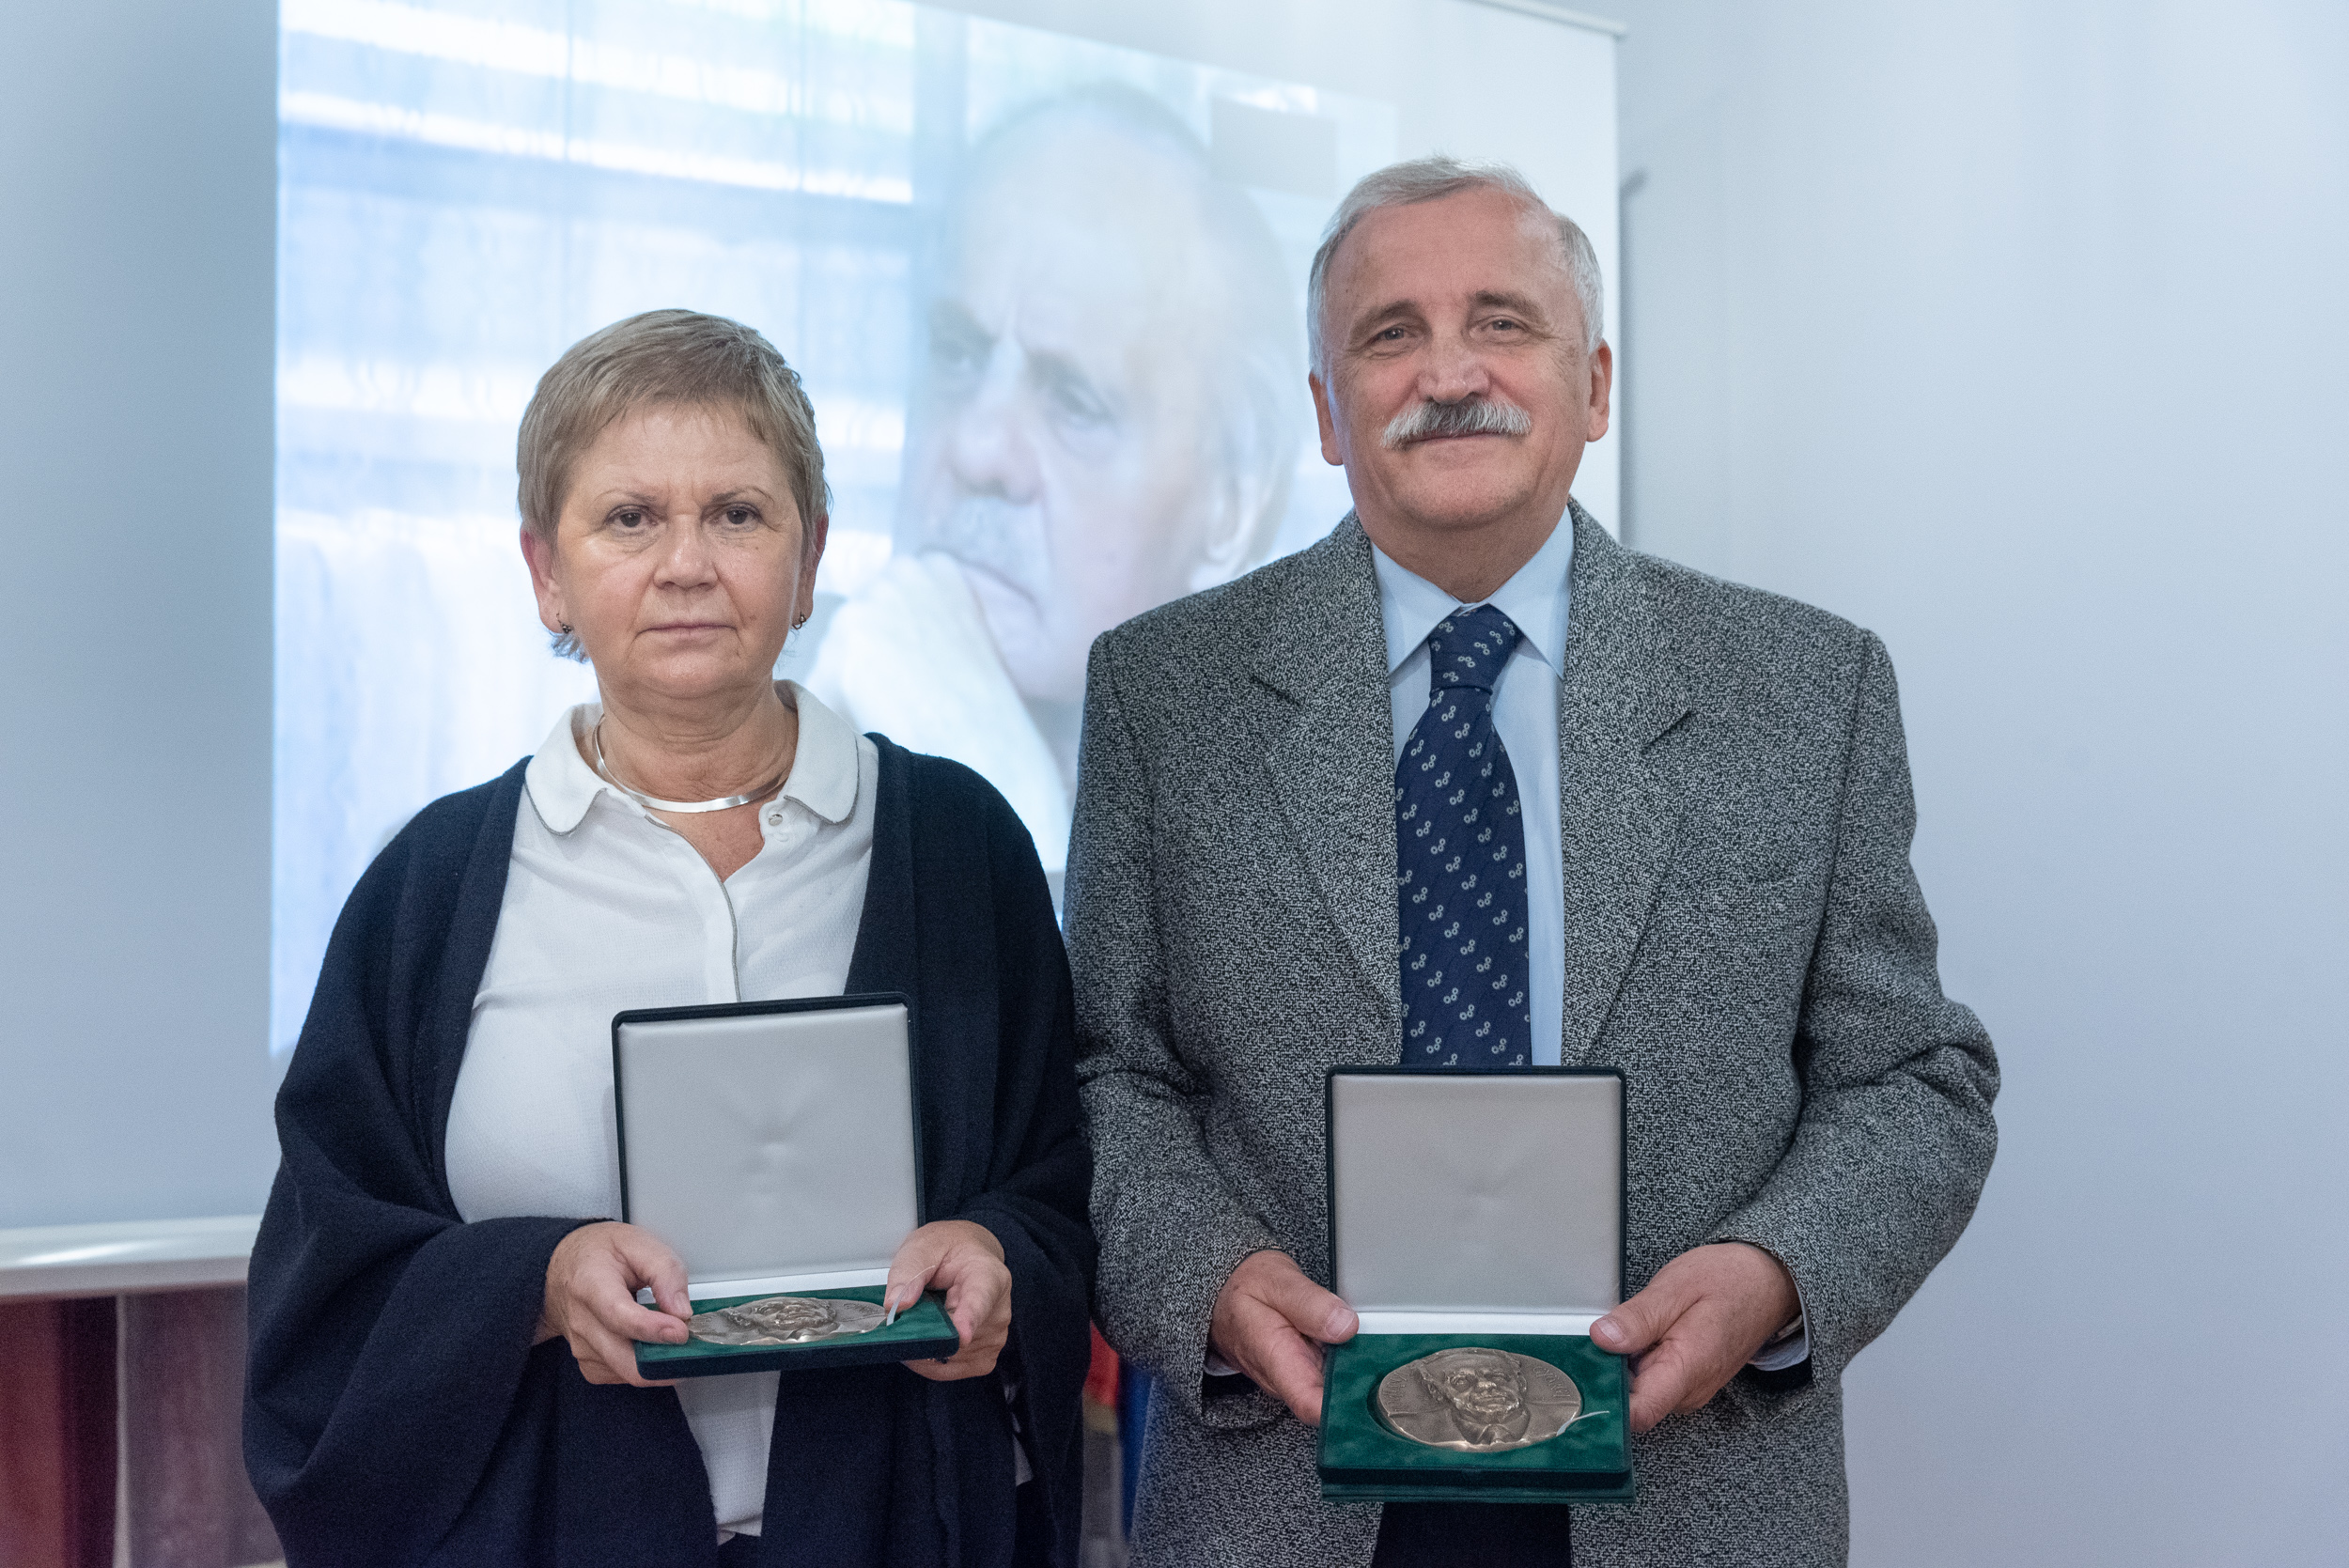 Dr. Pál Katalin hematológus és Dr. Turi Tibor kardiológus vehették át a Romhányi díjat